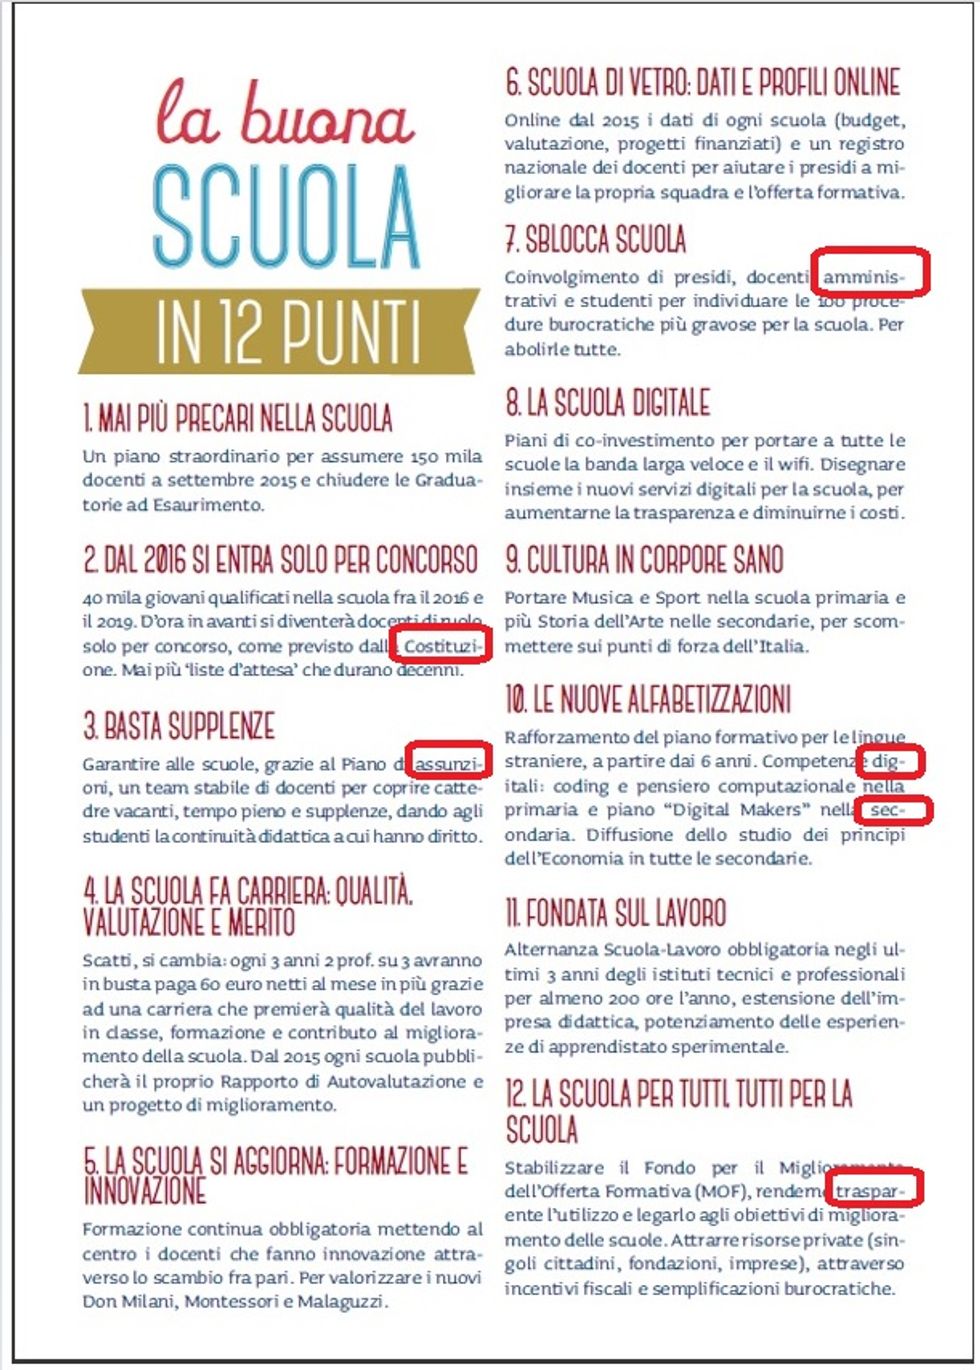 Renzi lancia #labuonascuola: con 6 errori di ortografia